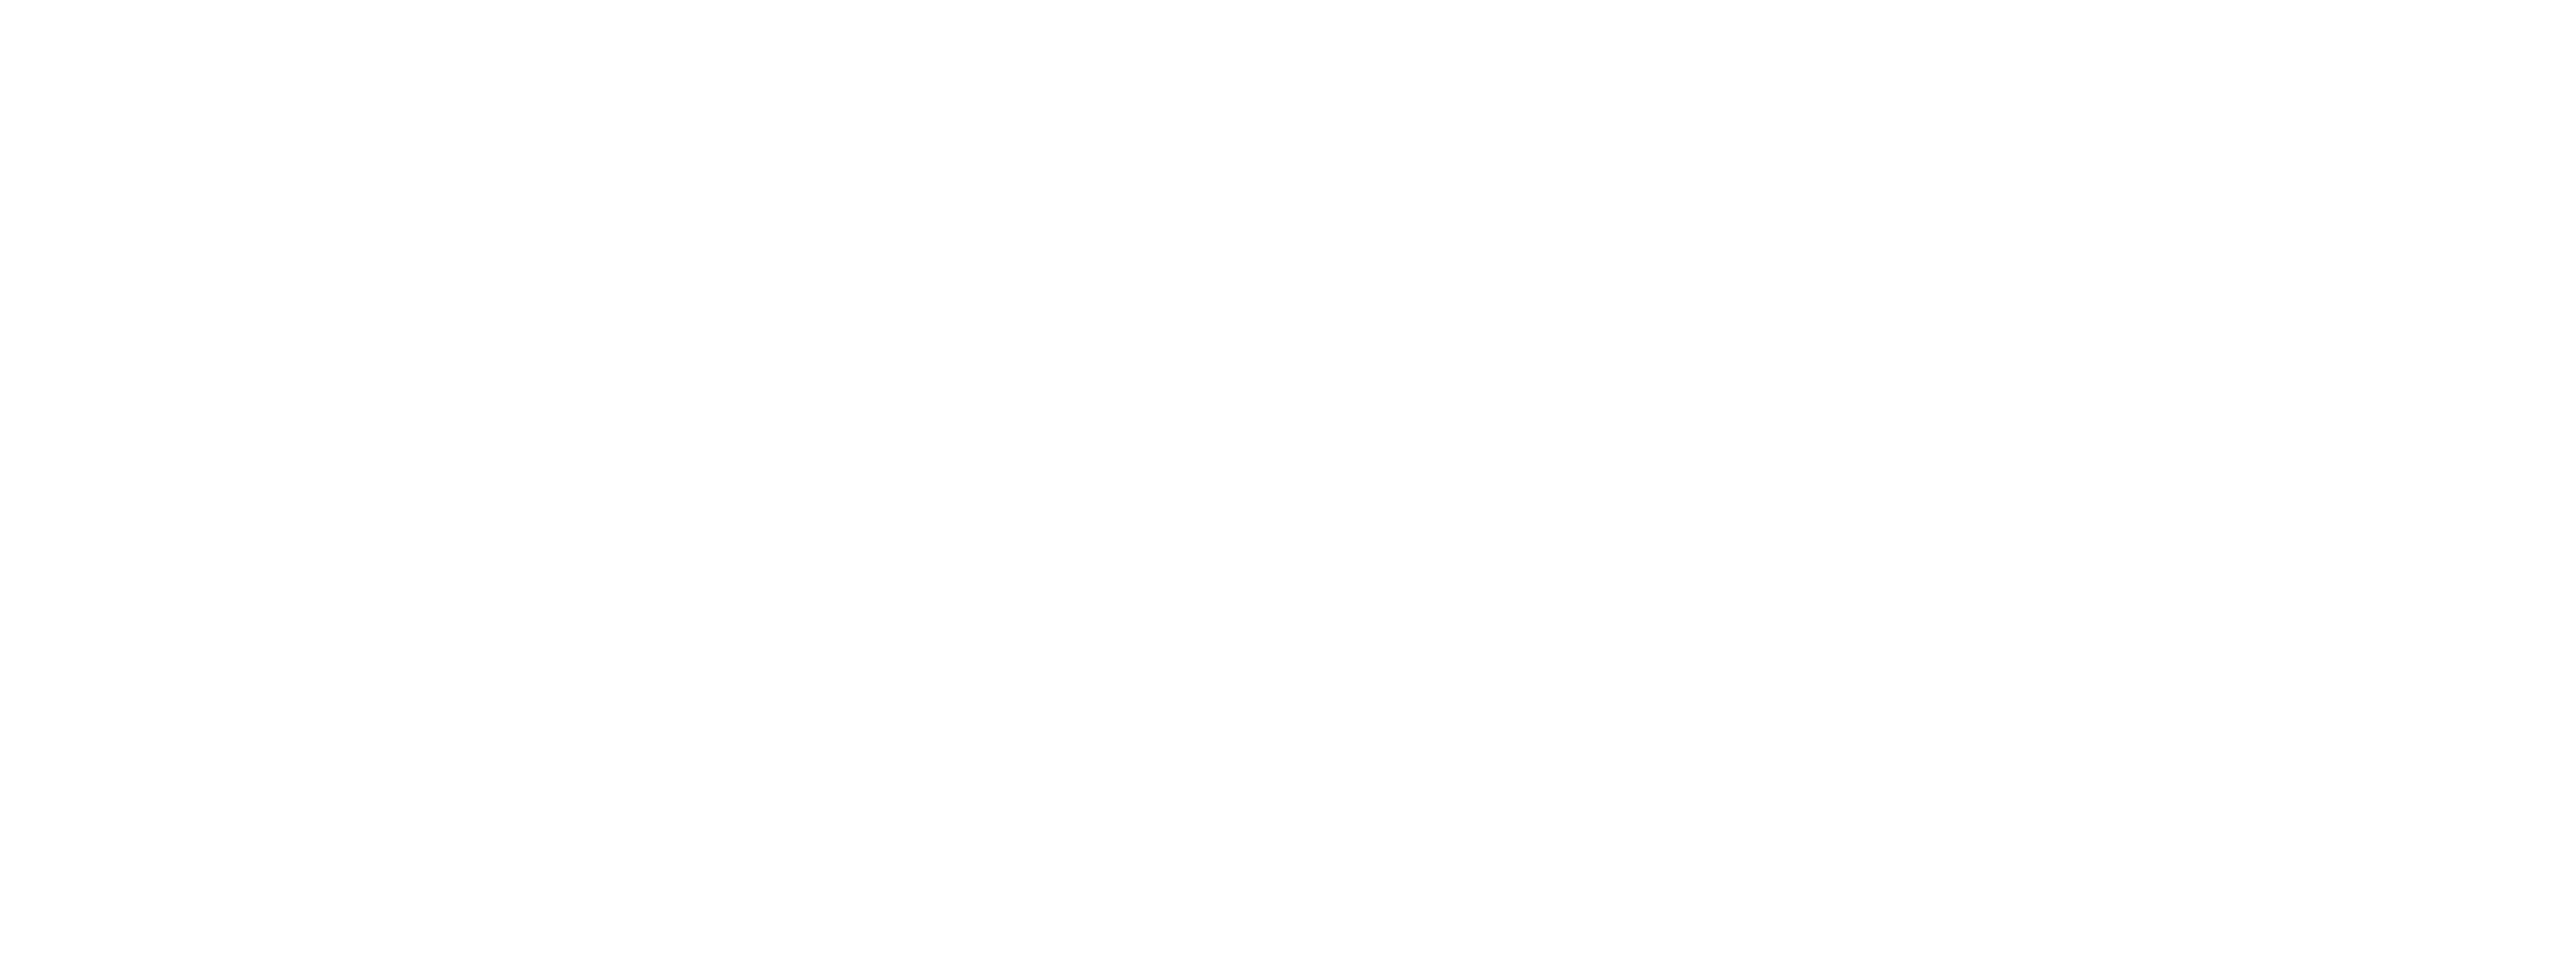 Copper Hill Logo